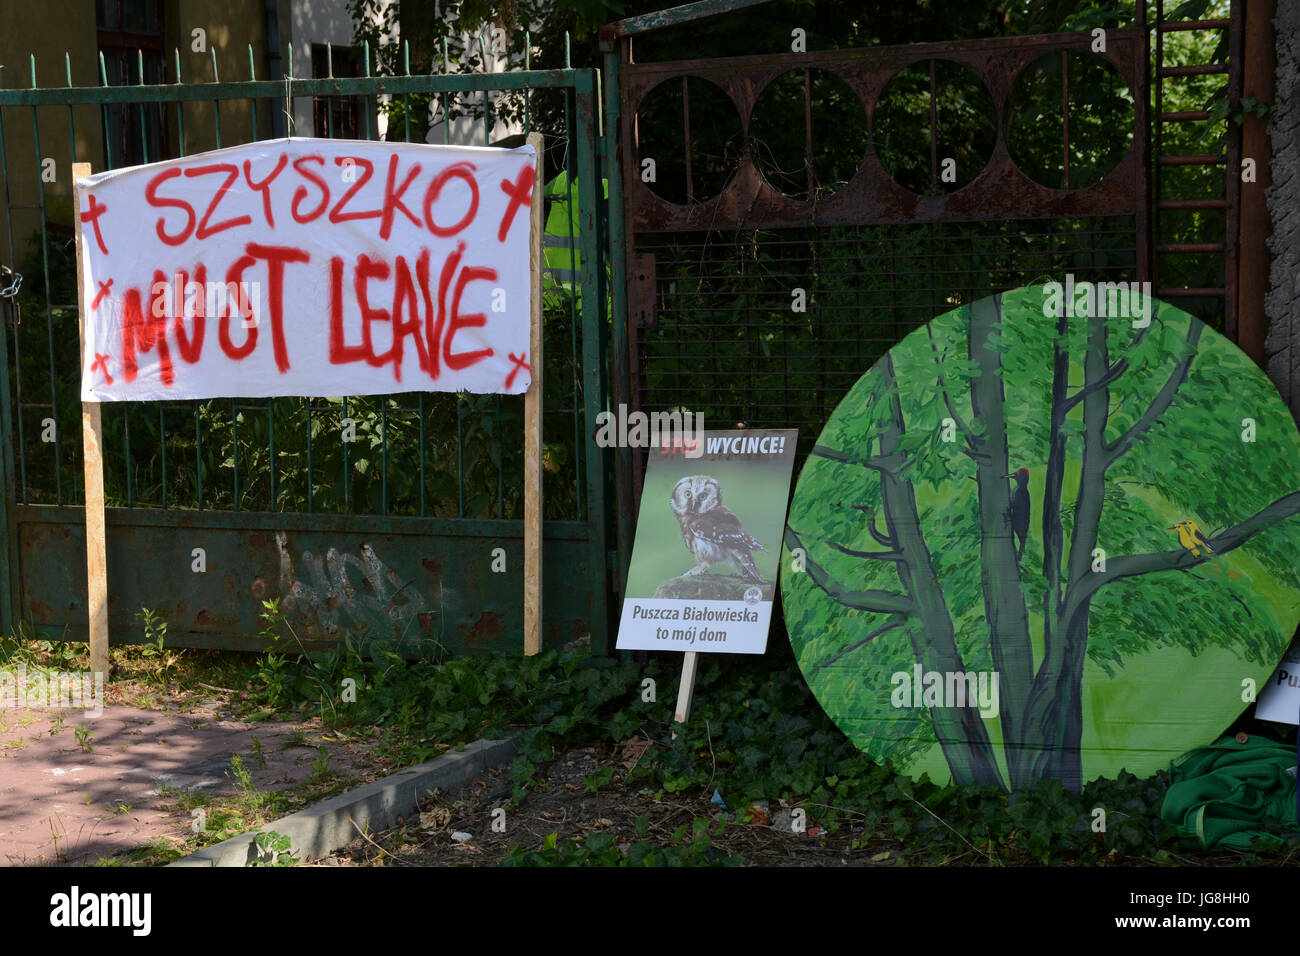 Cracovia in Polonia. 4 Luglio, 2017. Protesta durante la 41a sessione del World Heritage Committee-Unesco contro la grande scala accesso alla foresta di Bialowieza, un sito patrimonio mondiale dell'UNESCO. Foto Stock